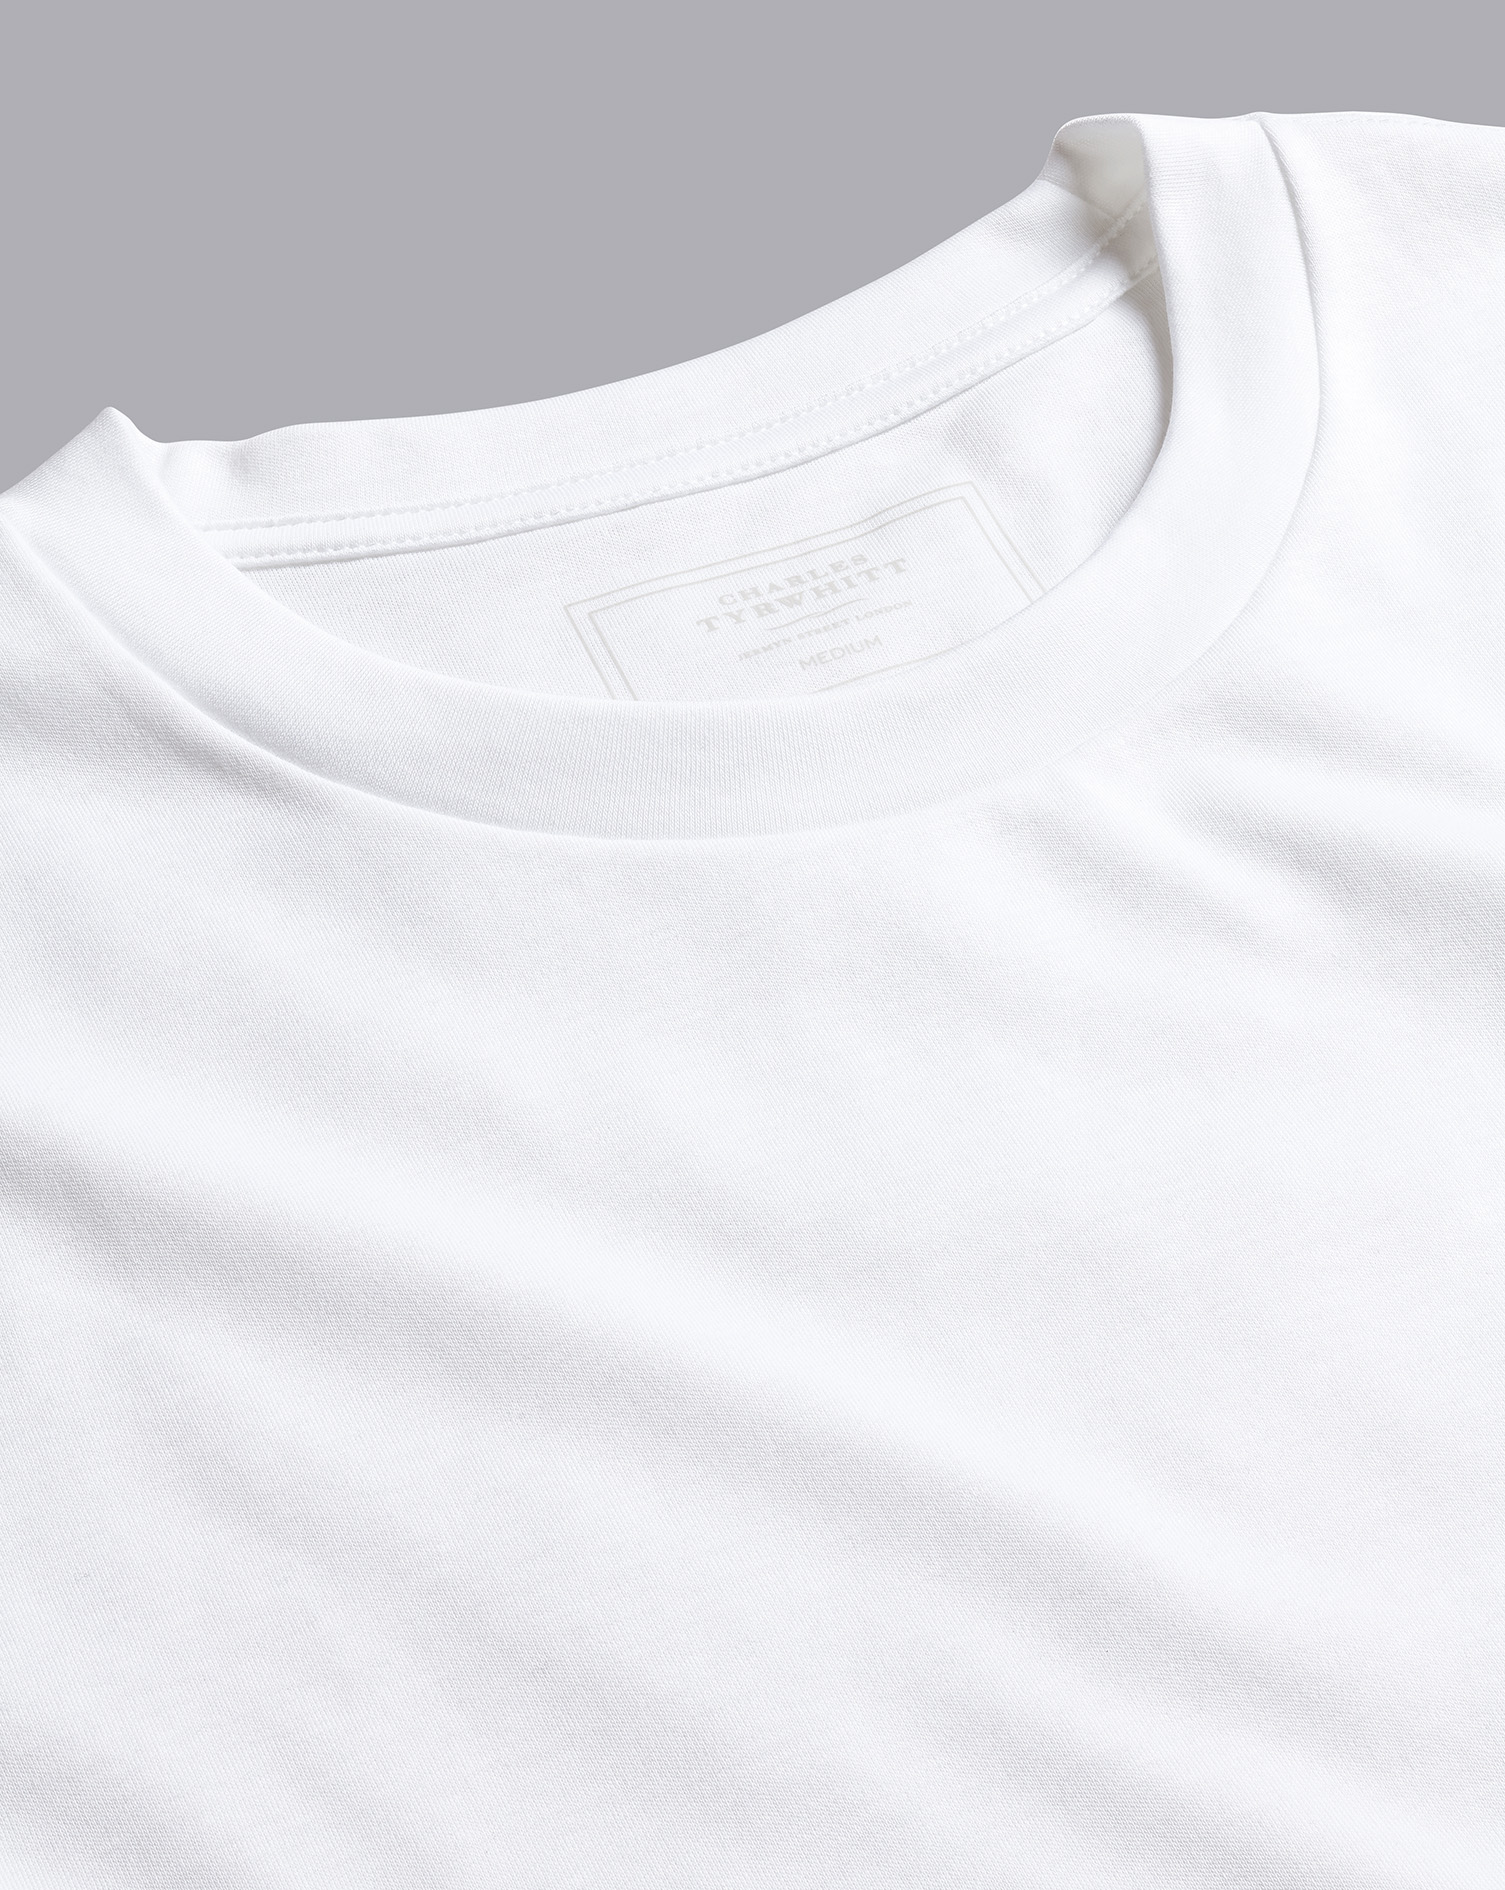 Men's Charles Tyrwhitt Long Sleeve T-Shirt - White Size Large Cotton
